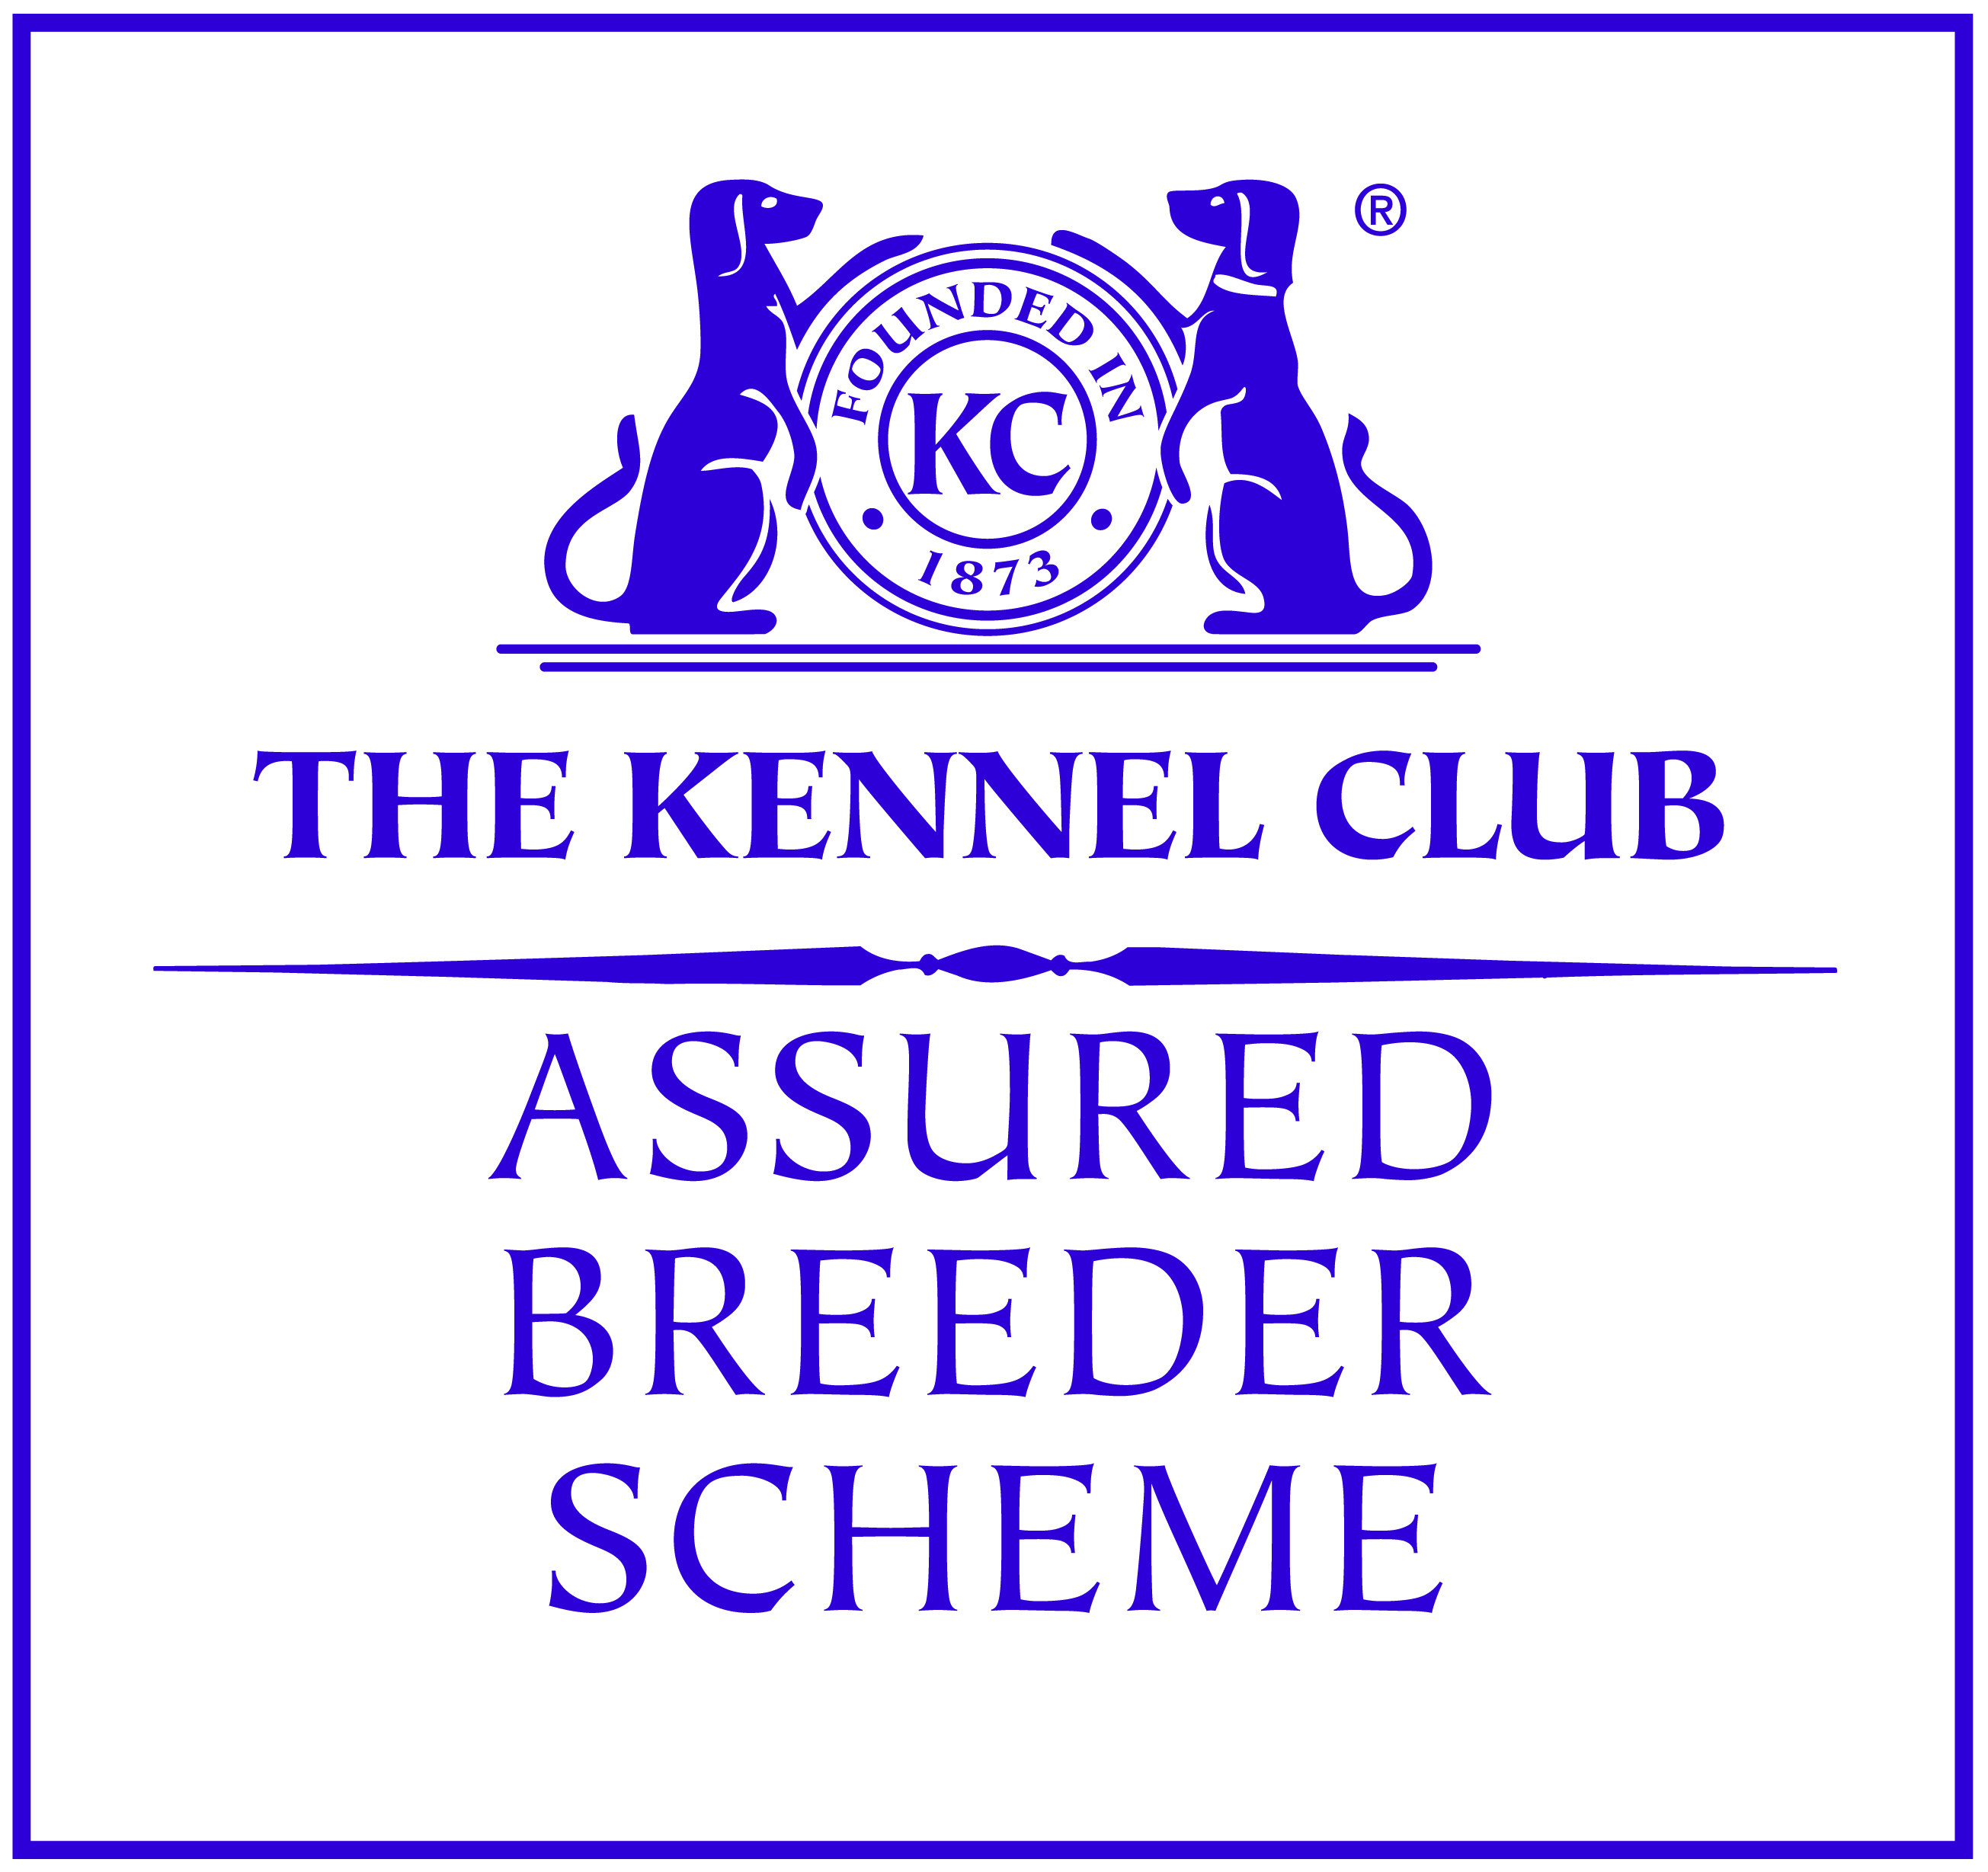 Kennel club assured breeder